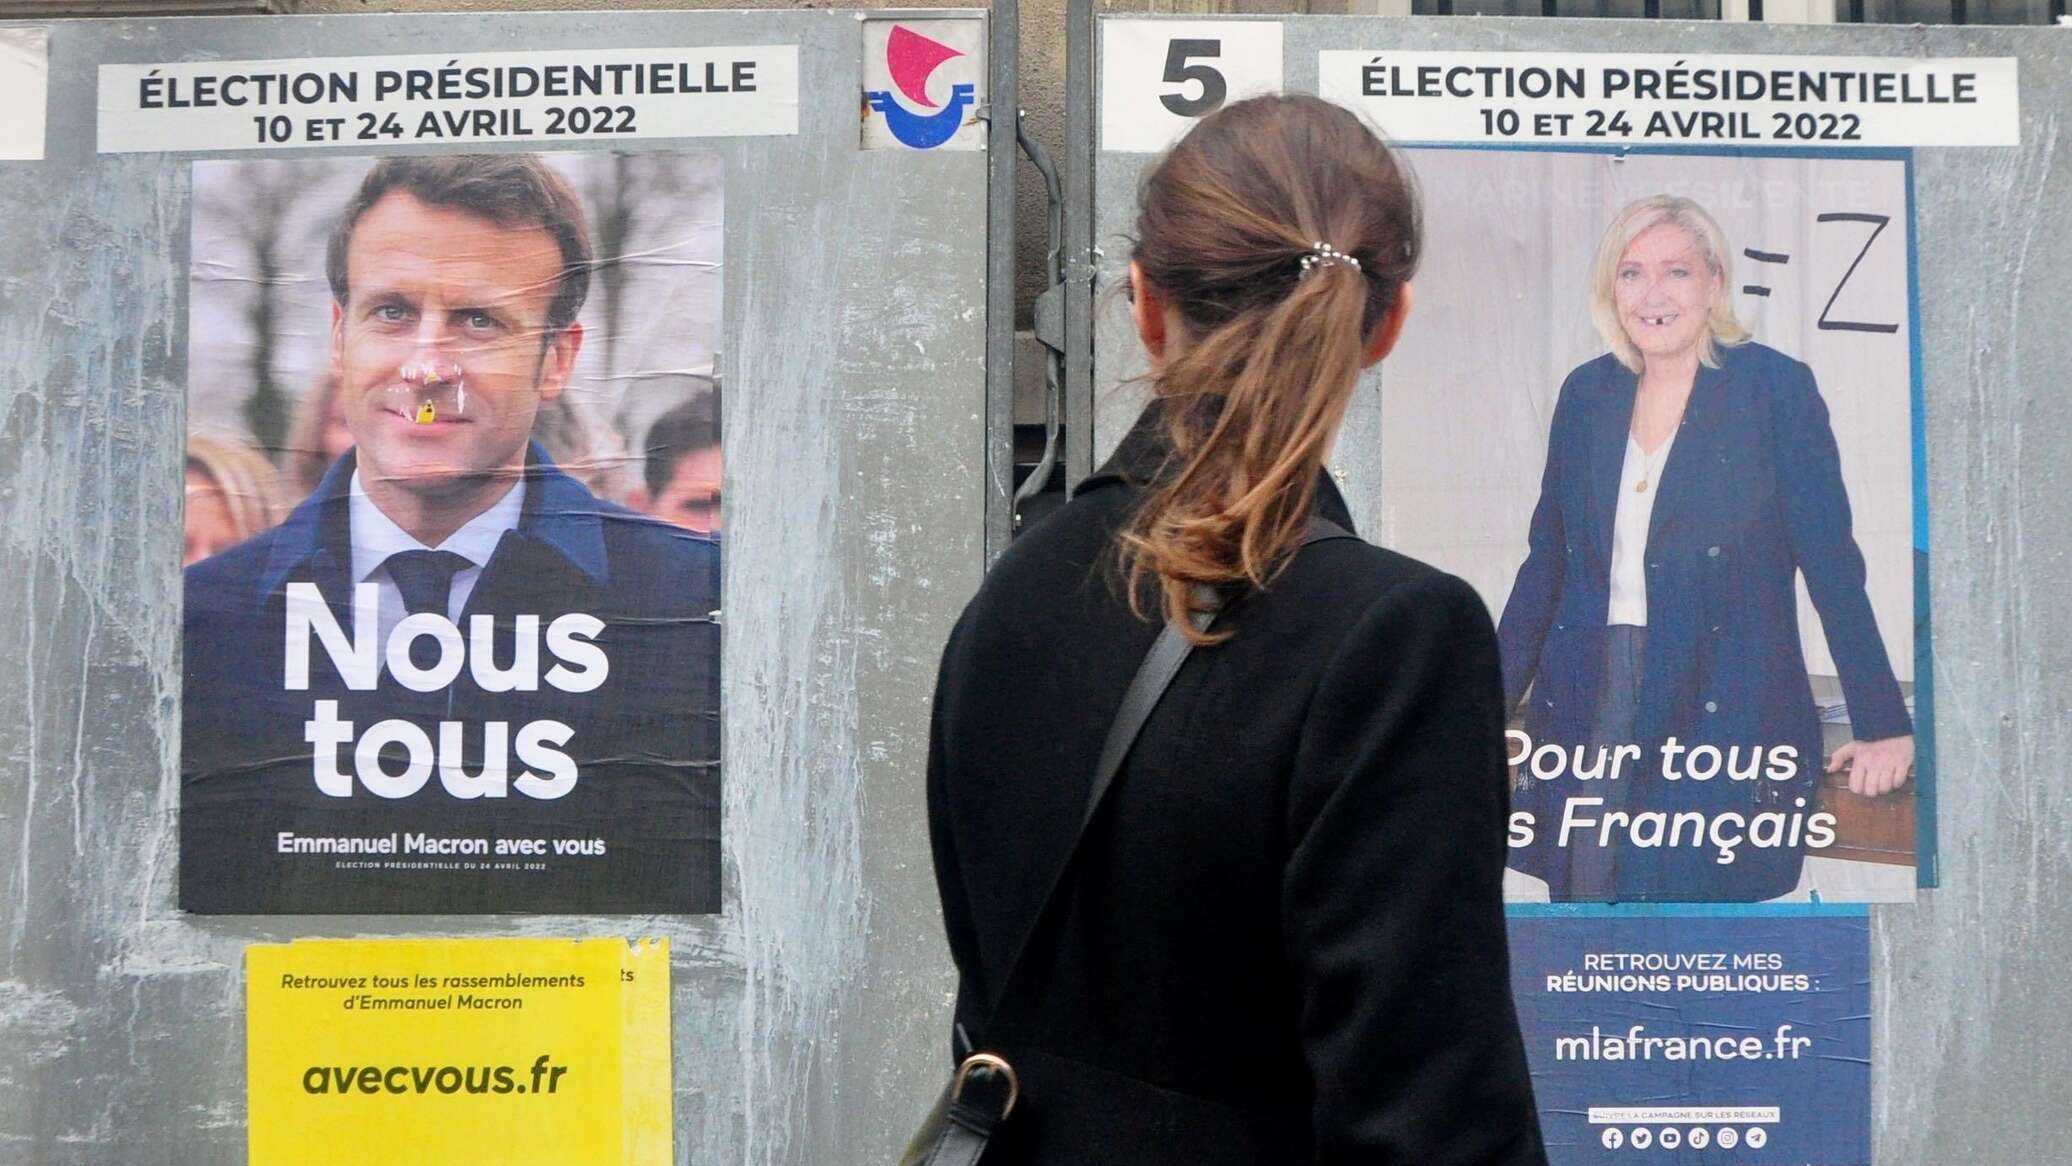 Второй тур президентских выборов. Выборы во Франции 2022 2 тур. Итоги выборов во Франции 2022. Выборы президента Франции 2022. Президентские выборы во Франции (2022).